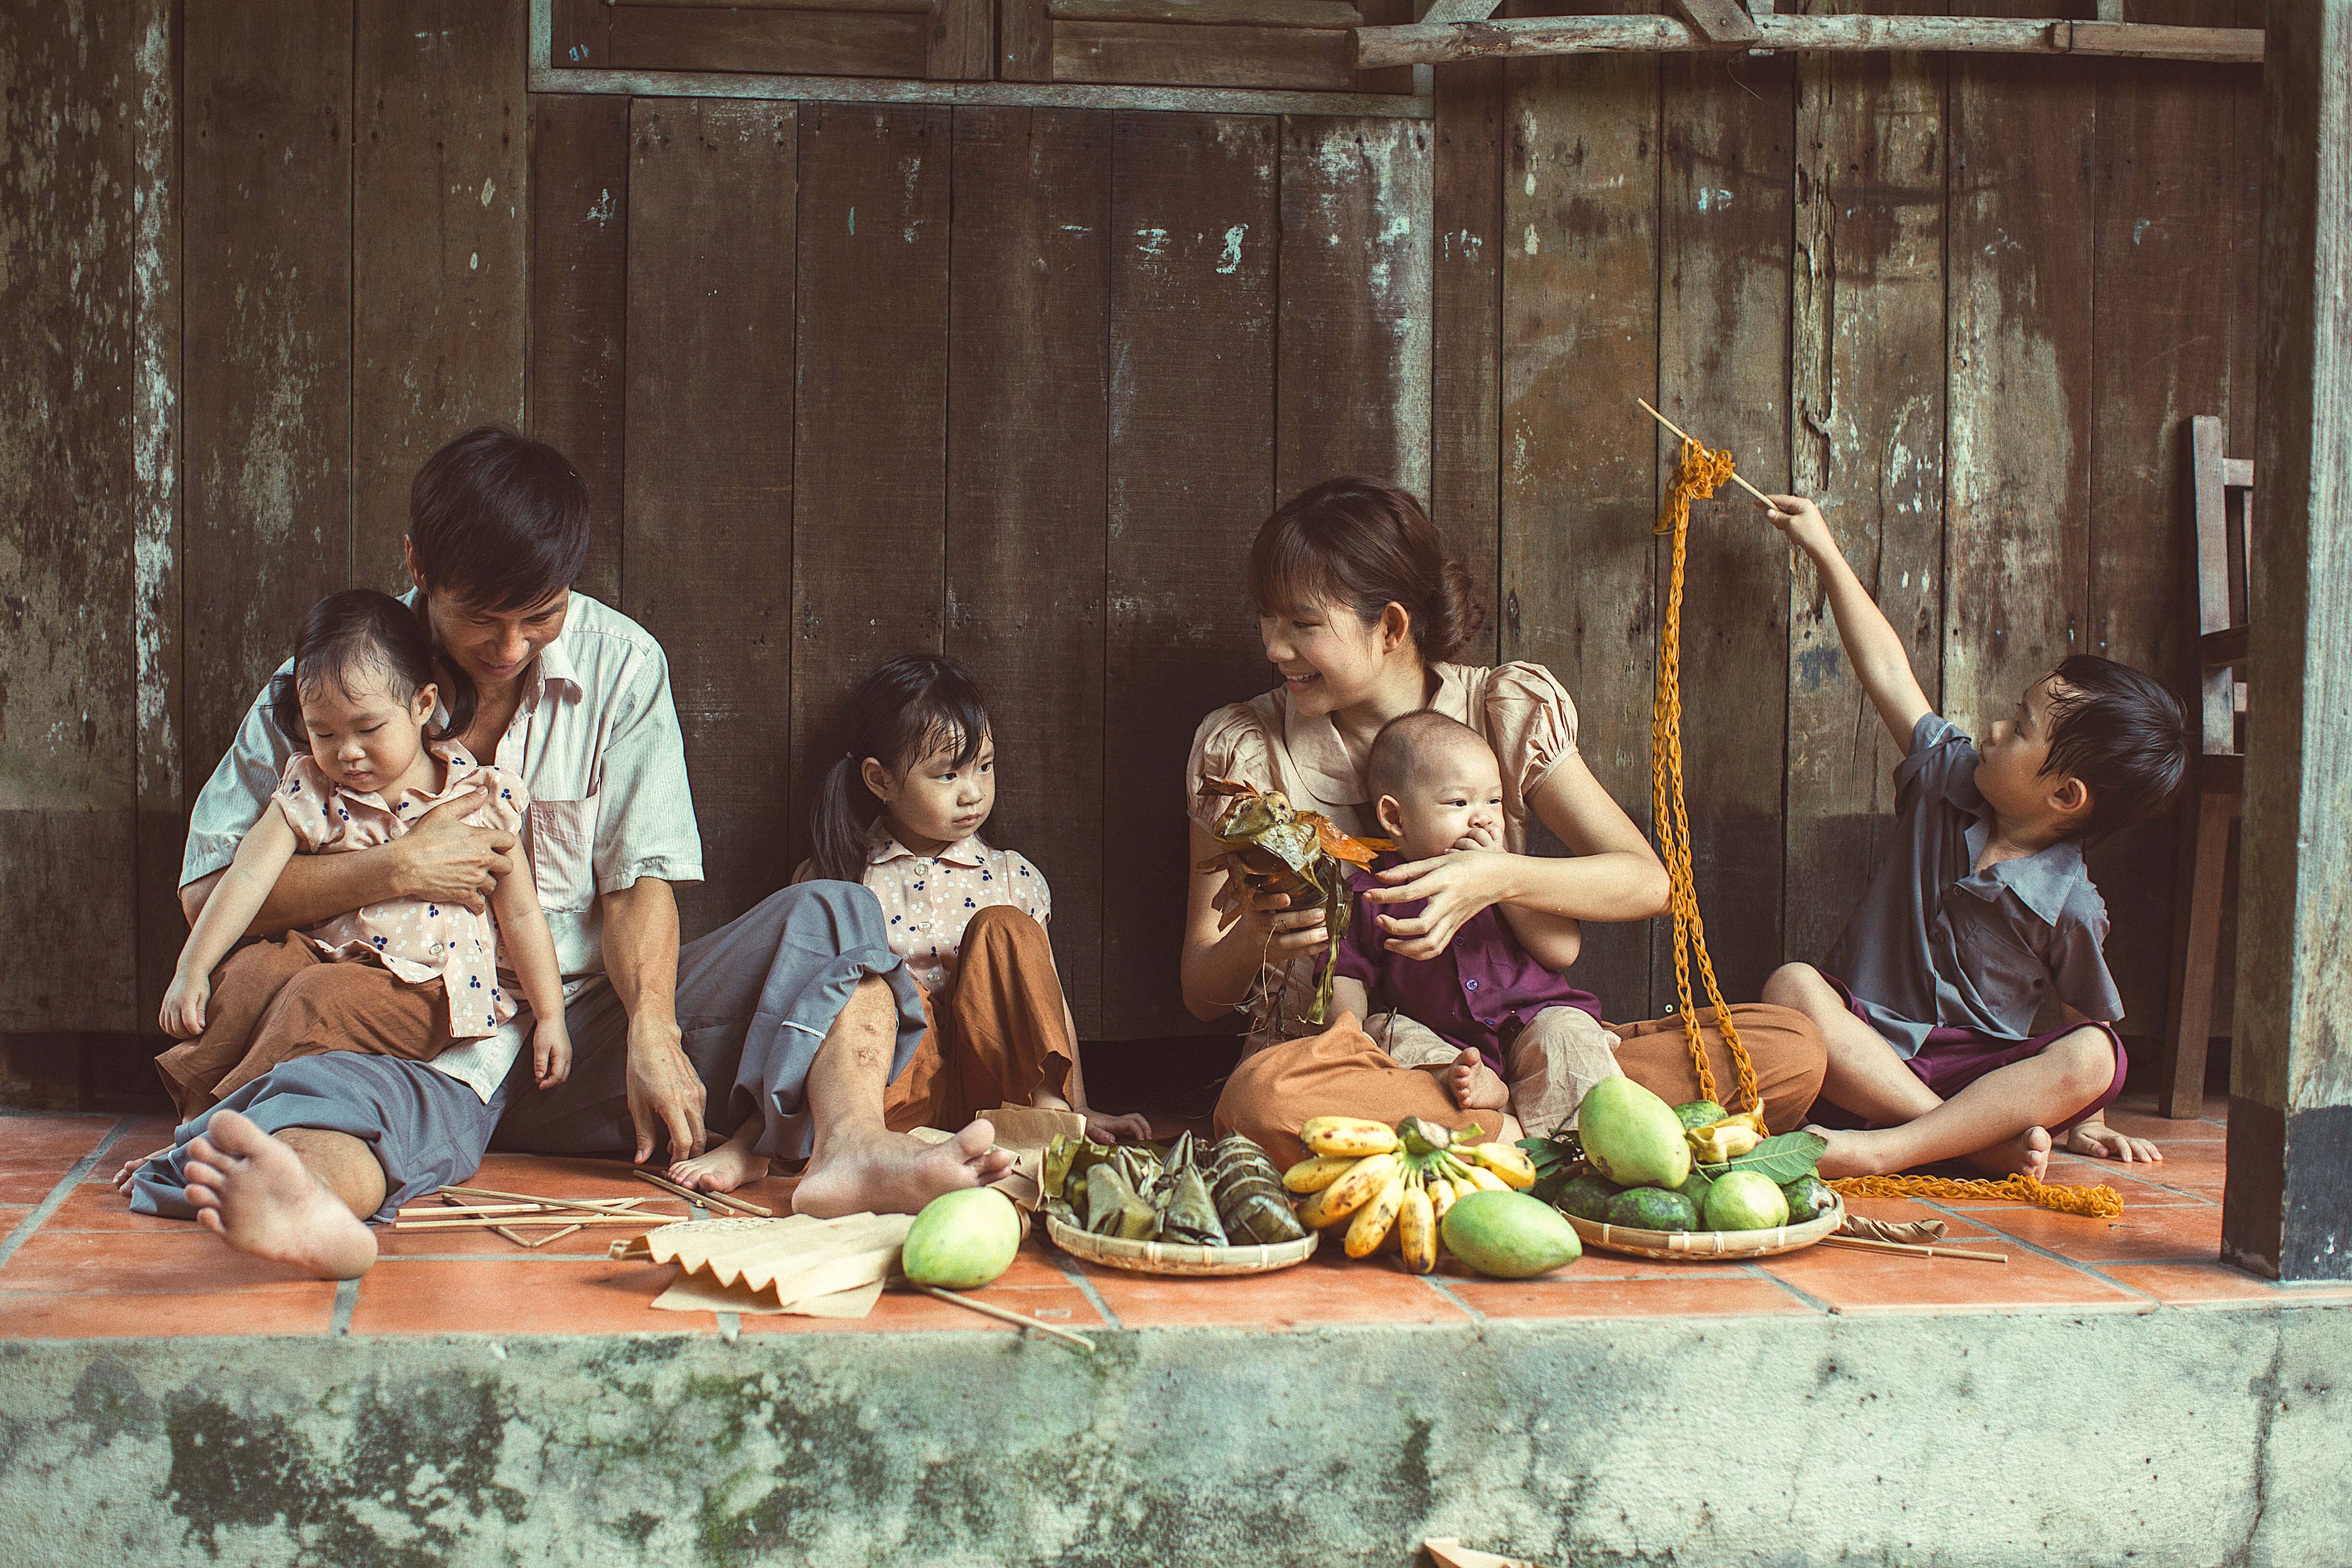 Những nông dân chăm chỉ và tình yêu đối với đất trồng của họ chính là nguồn cảm hứng dồi dào cho bức ảnh này. Hãy cùng xem và cảm nhận về những giá trị đích thực của đồng ruộng Việt Nam.